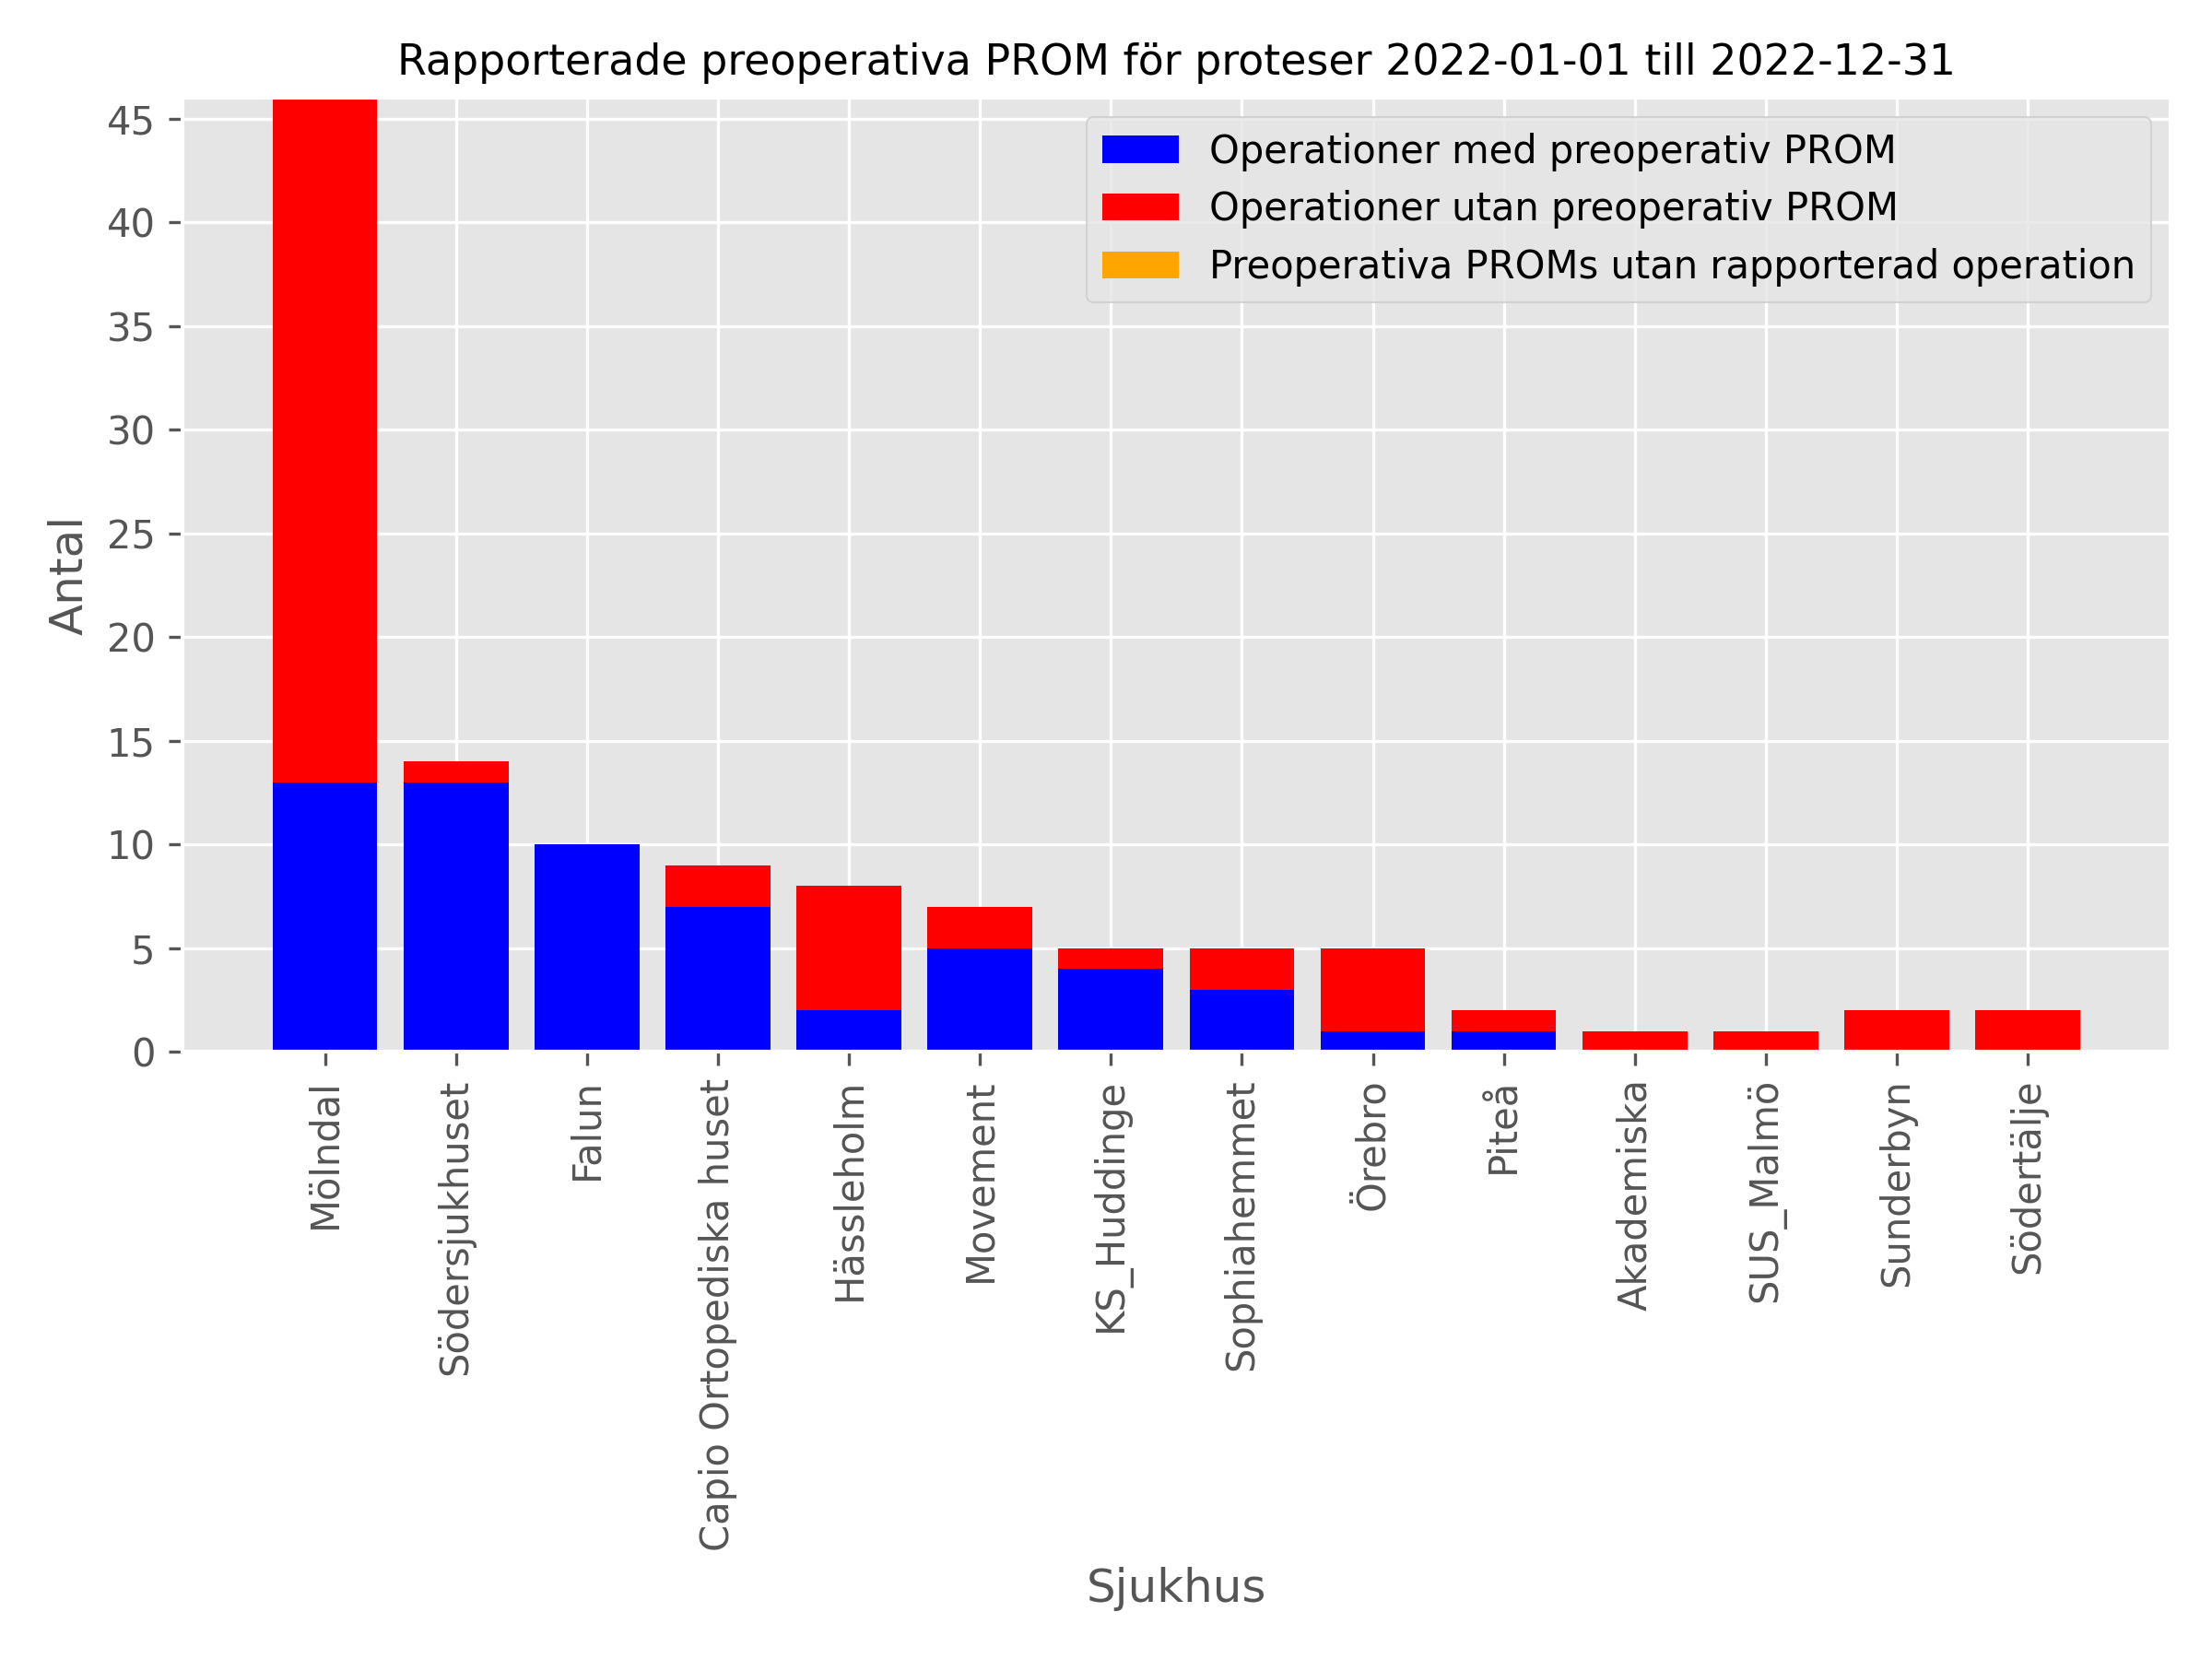 Graf som visar rapporterade preoperativa PROM för artrodes det senaste kalenderåret.